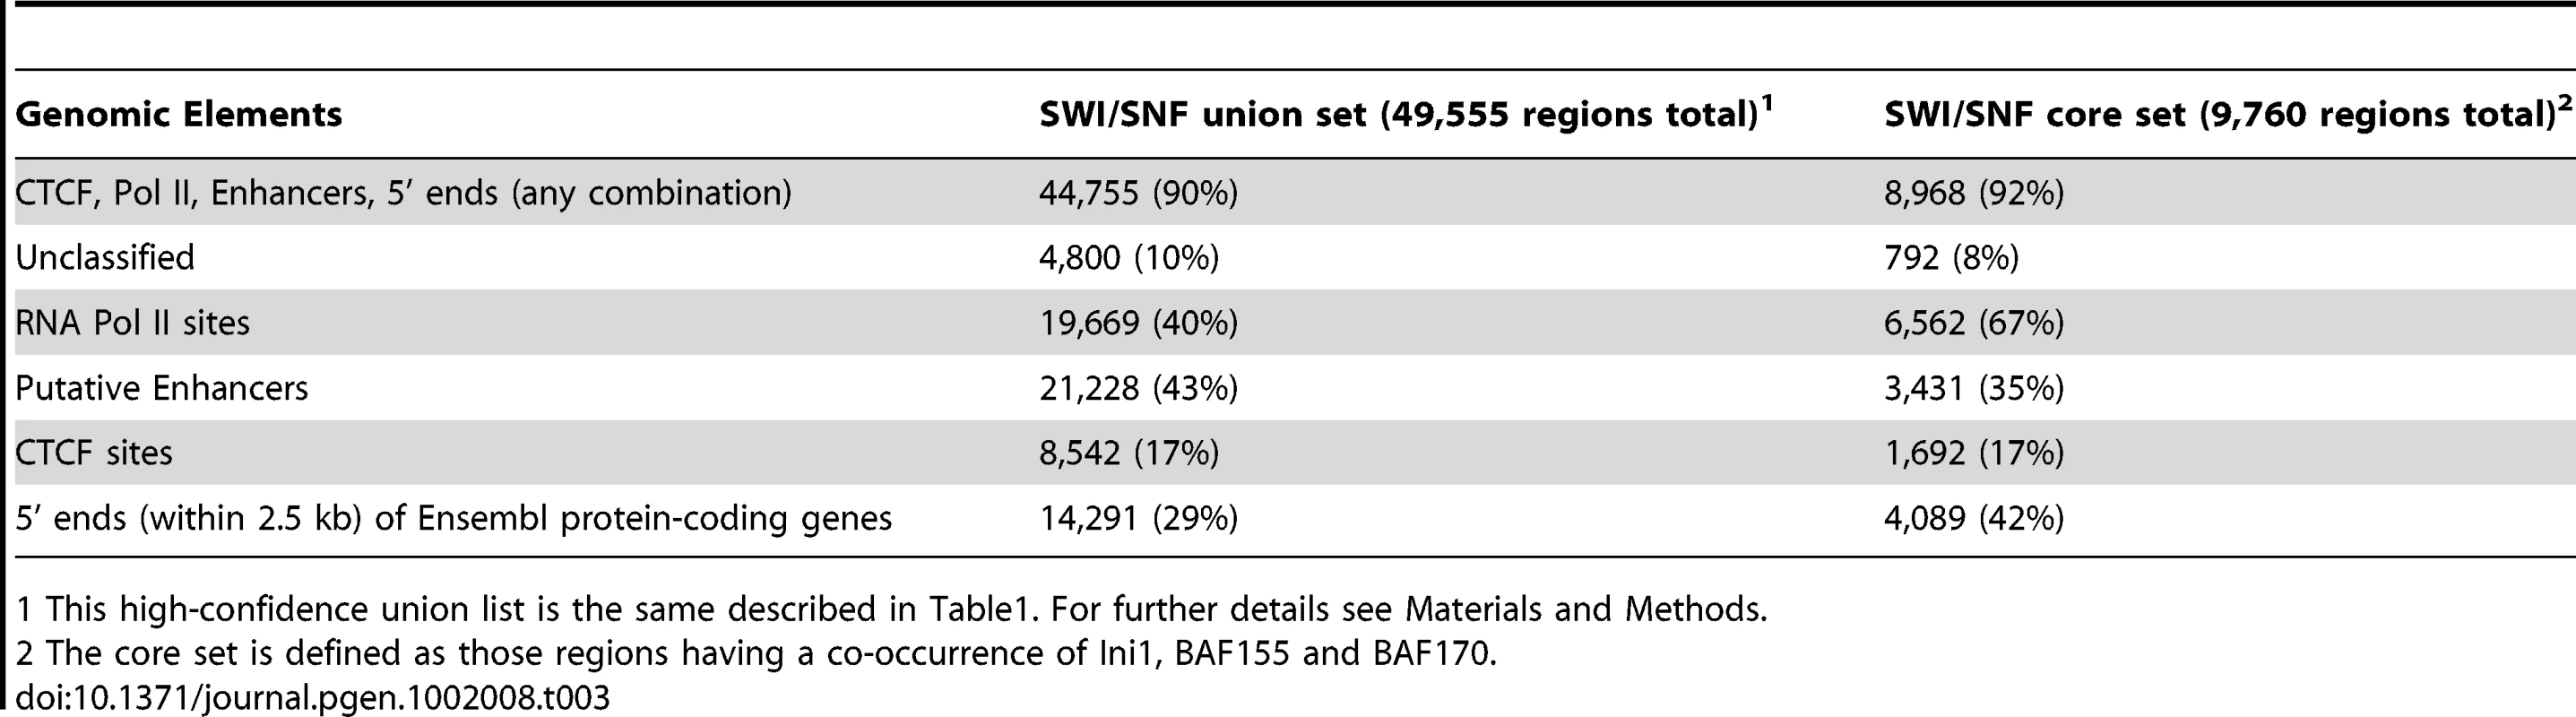 Genomic elements found in SWI/SNF target regions.